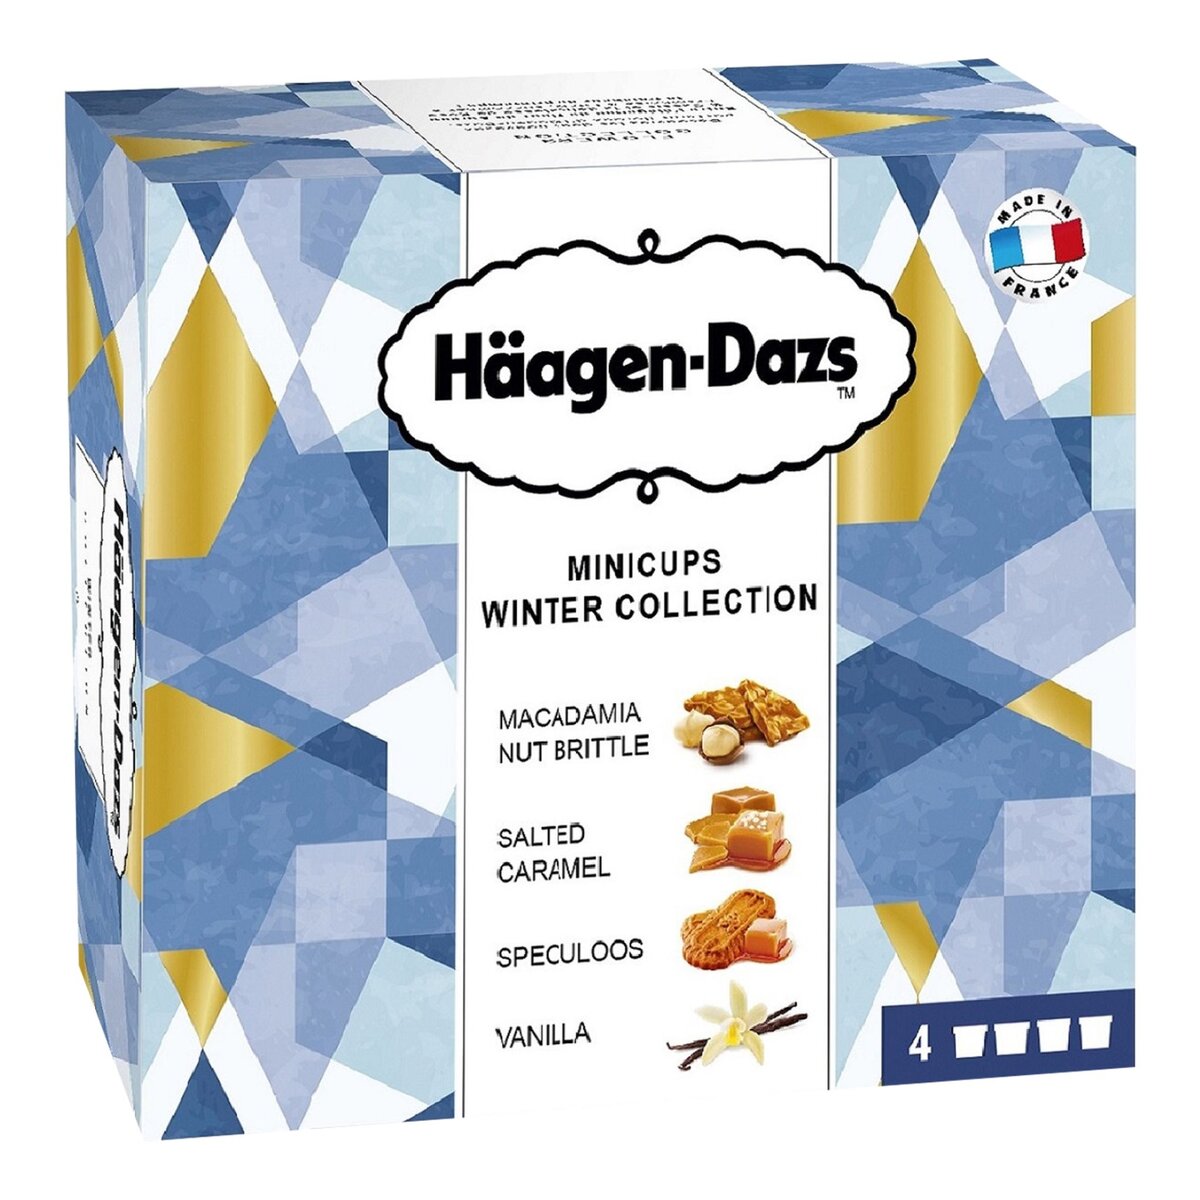 HAAGEN DAZS Häagen Dazs mini cup winter collection x4 -348g